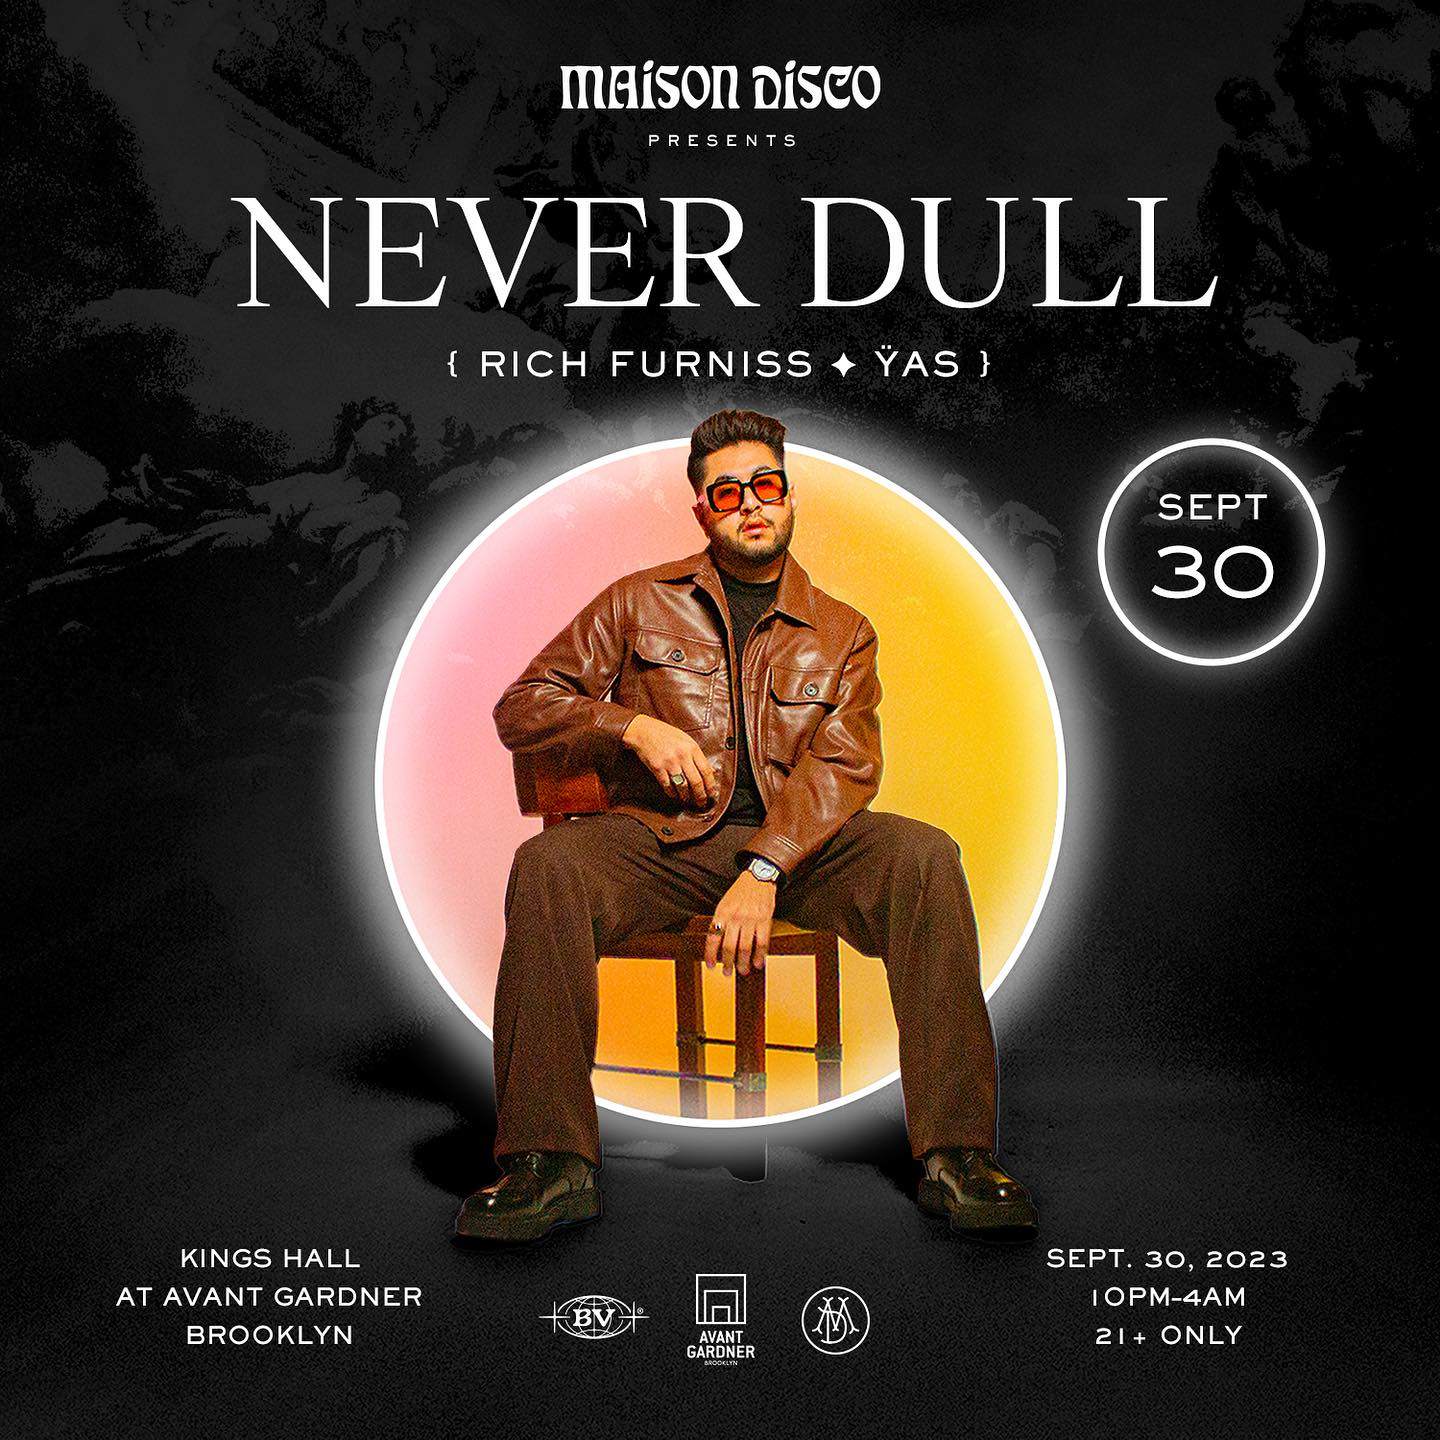 MAISON DISCO X Never Dull at Kings Hall - Avant Gardner, New York